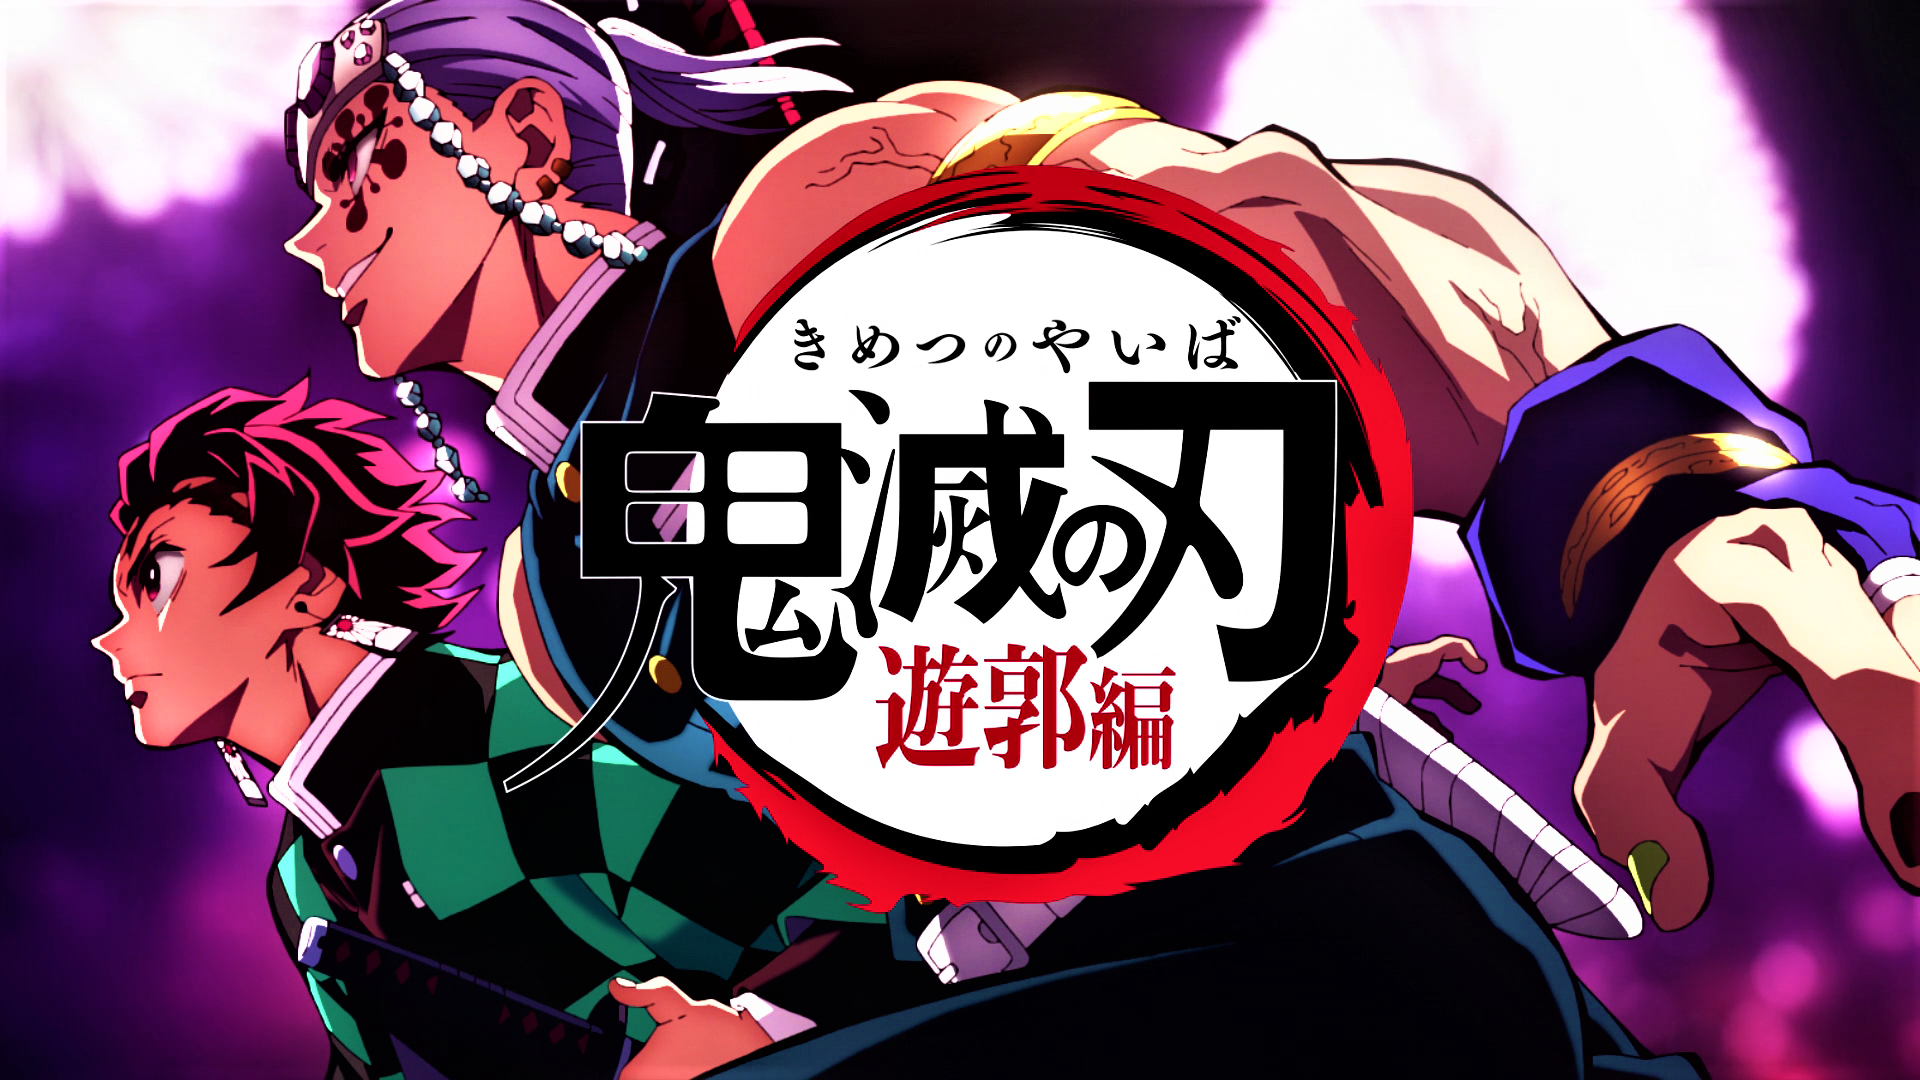 Kimetsu no Yaiba Mugen Train, bom tấn anime công chiếu vào tháng 10